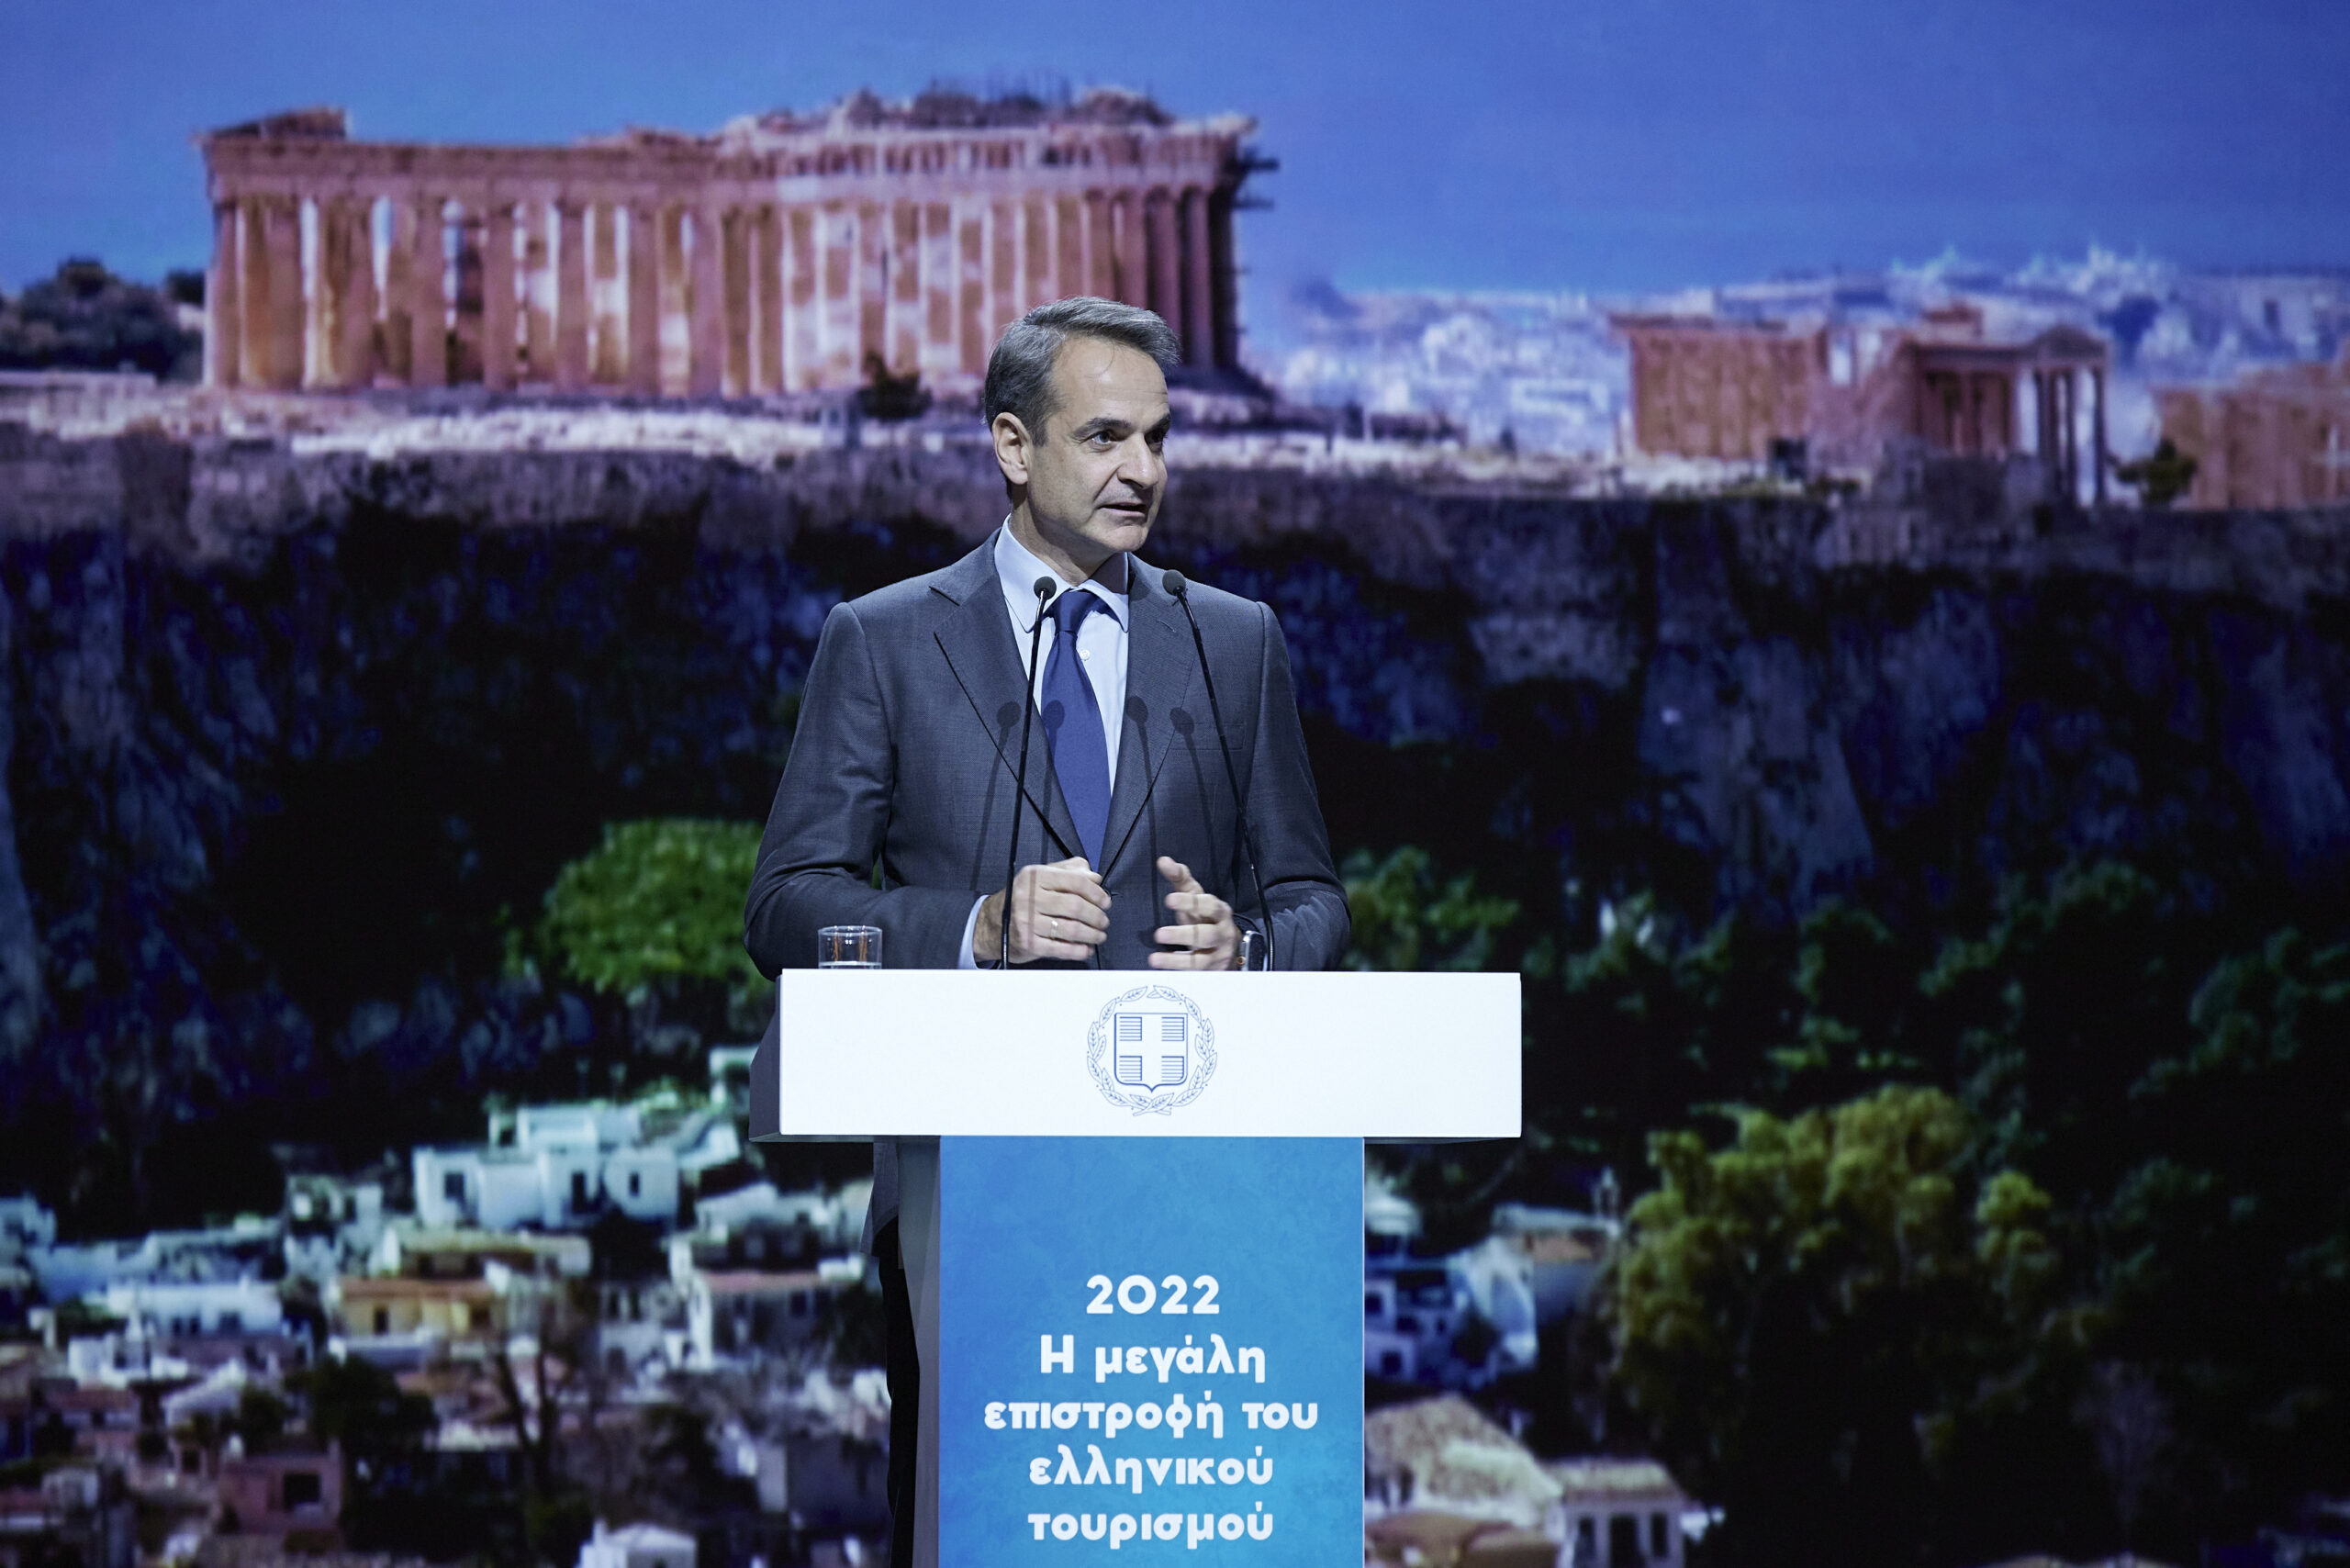 Κυρ. Μητσοτάκης: Η μεγάλη επιστροφή του ελληνικού τουρισμού δεν έτυχε, πέτυχε - "Τουρισμός για όλους" και το 2023